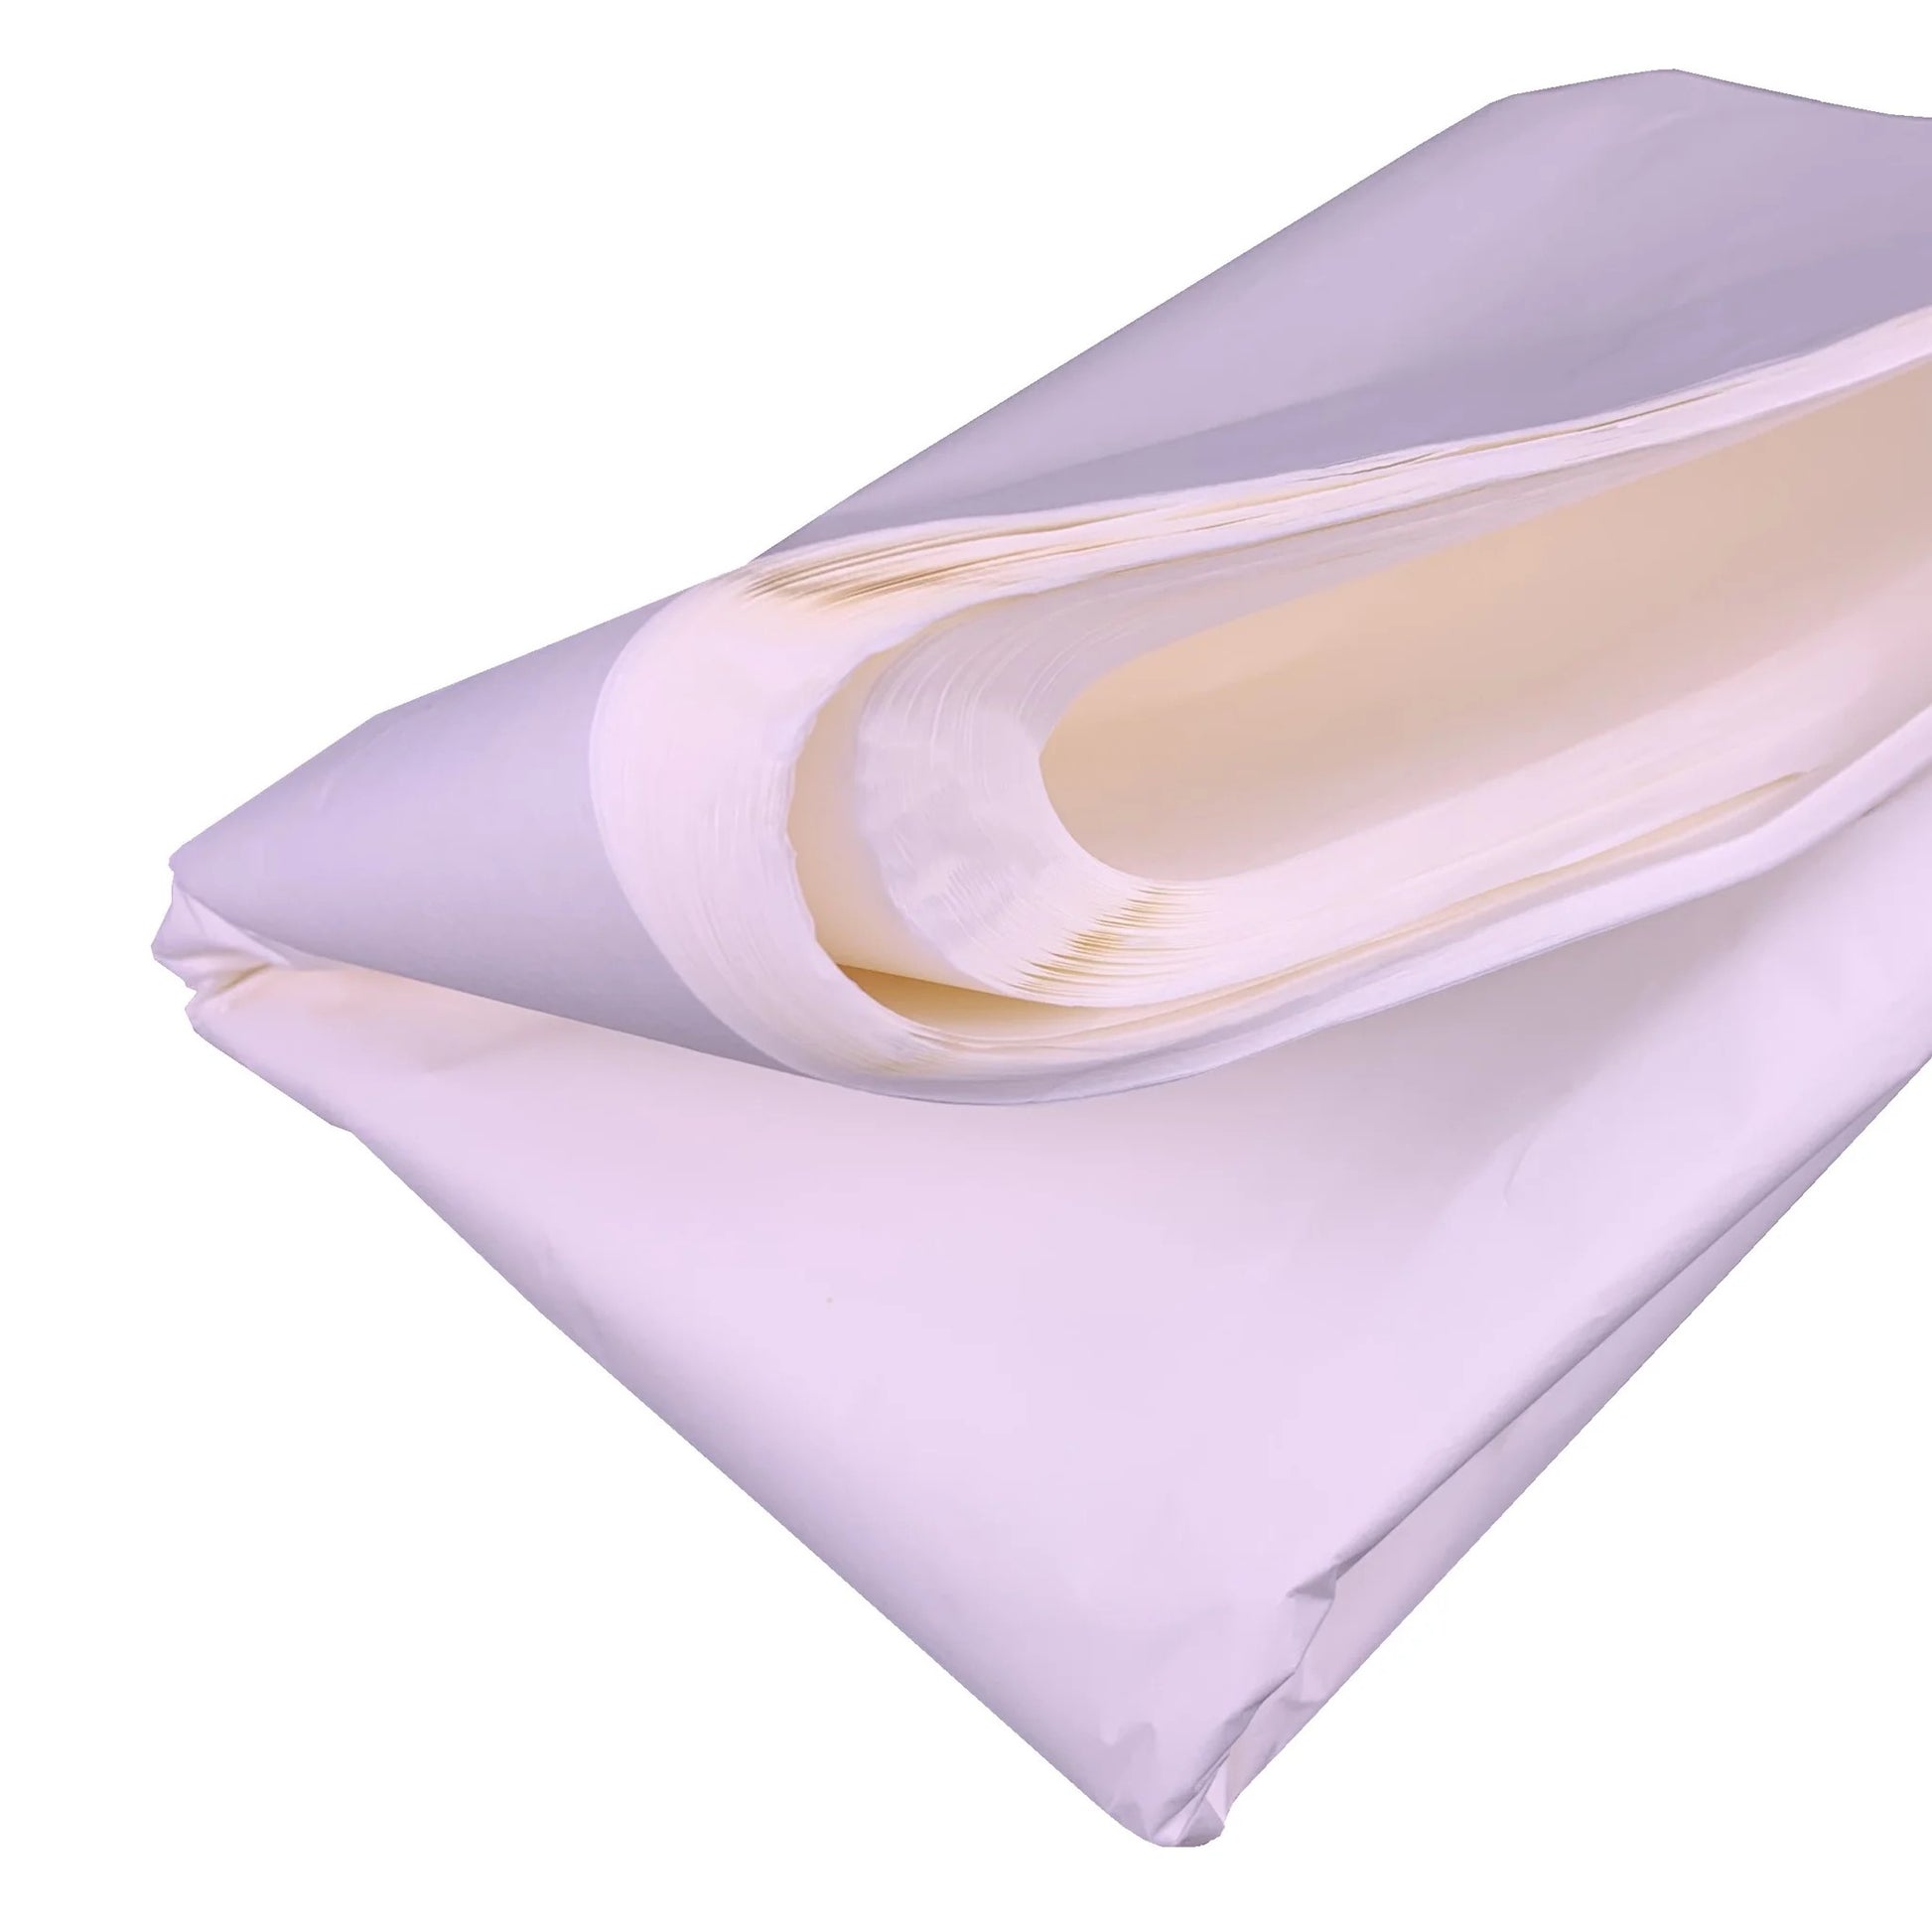 B438 - Wet Strength Tissue Paper. Pack of 25